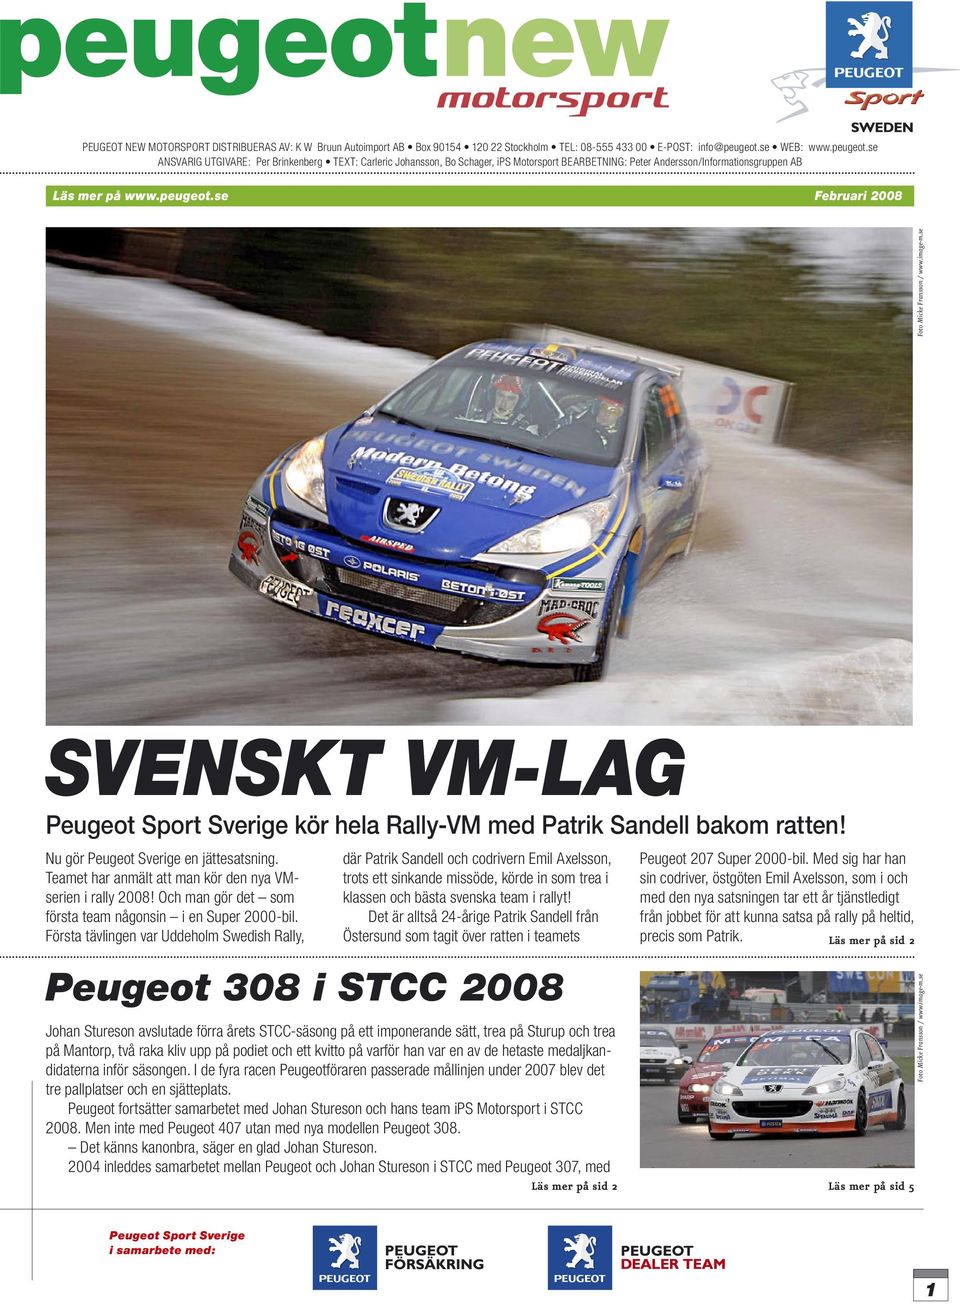 Nu gör Peugeot Sverige en jättesatsning. Teamet har anmält att man kör den nya VMserien i rally 2008! Och man gör det som första team någonsin i en Super 2000-bil.